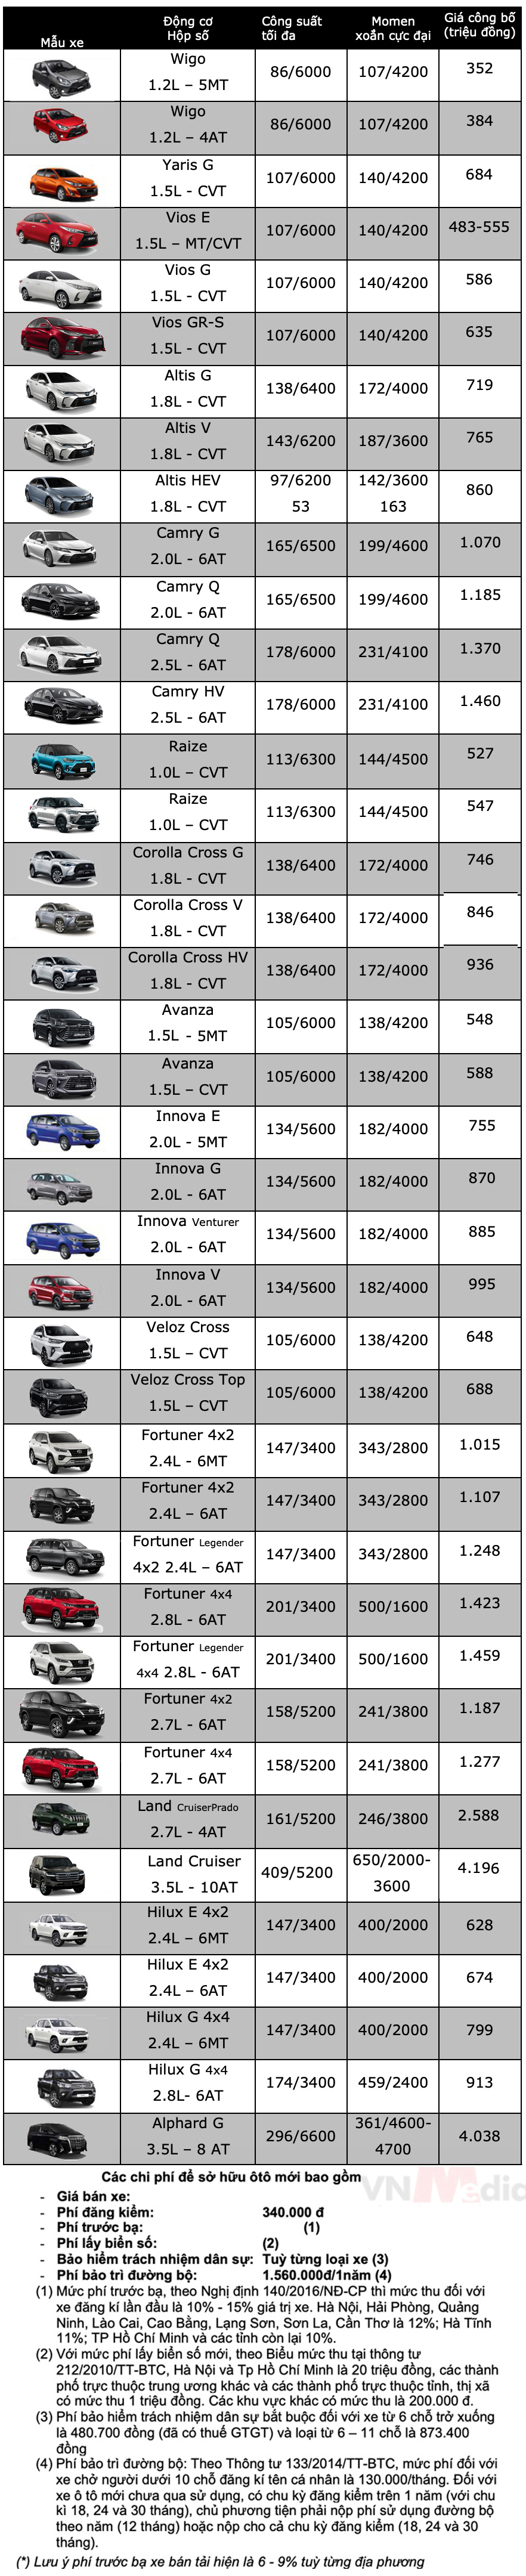 Bảng giá xe Toyota tháng 3: Veloz Cross được ưu đãi hơn 30 triệu đồng - Ảnh 2.